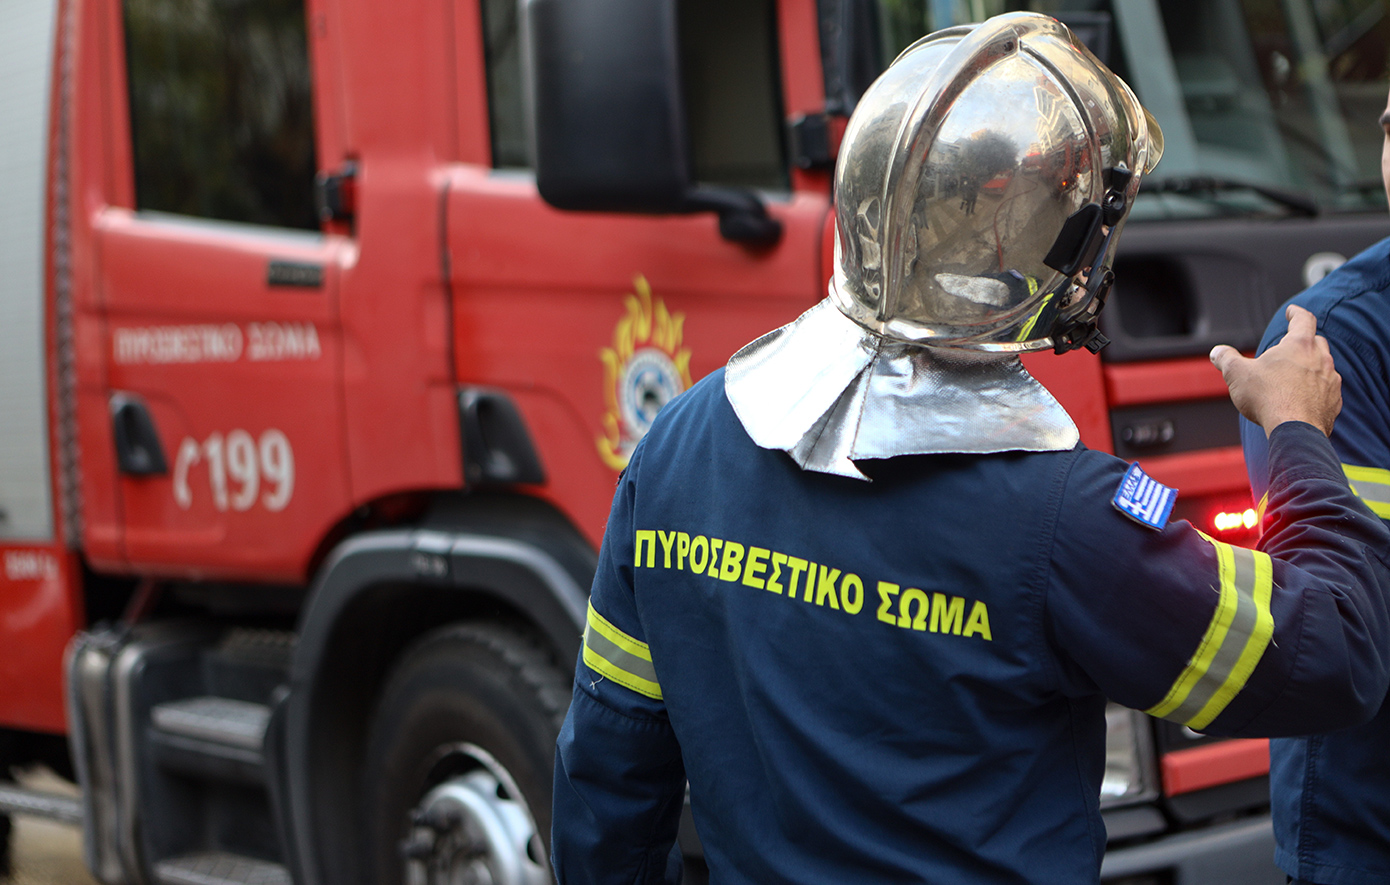 Σορός άνδρα εντοπίστηκε κατά τη διάρκεια κατάσβεσης φωτιάς σε σπίτι στη Λακωνία